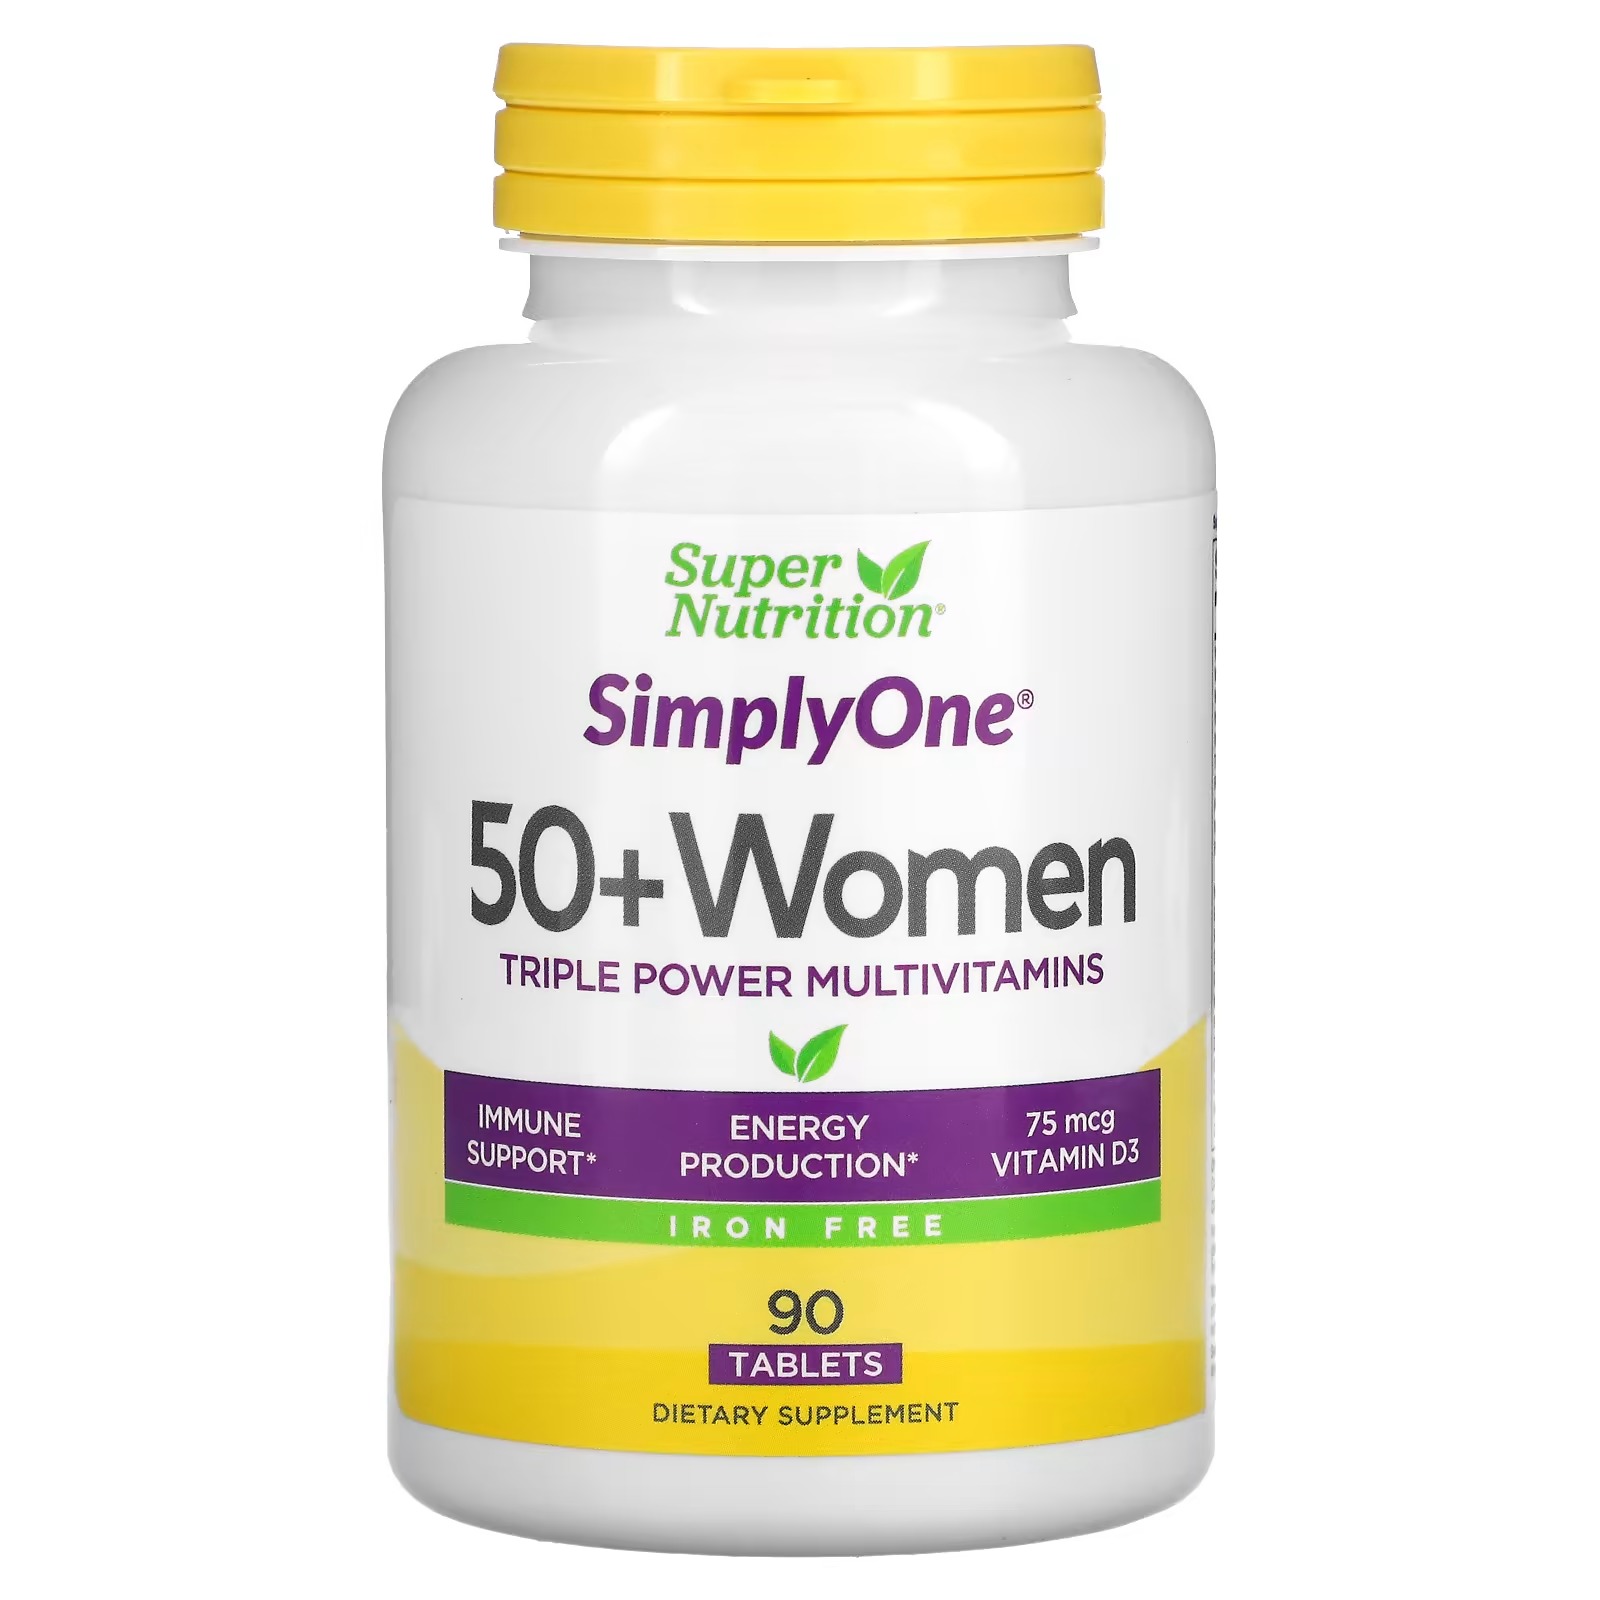 Мультивитамины Super Nutrition Triple Power для женщин старше 50 лет, 90 таблеток цена и фото